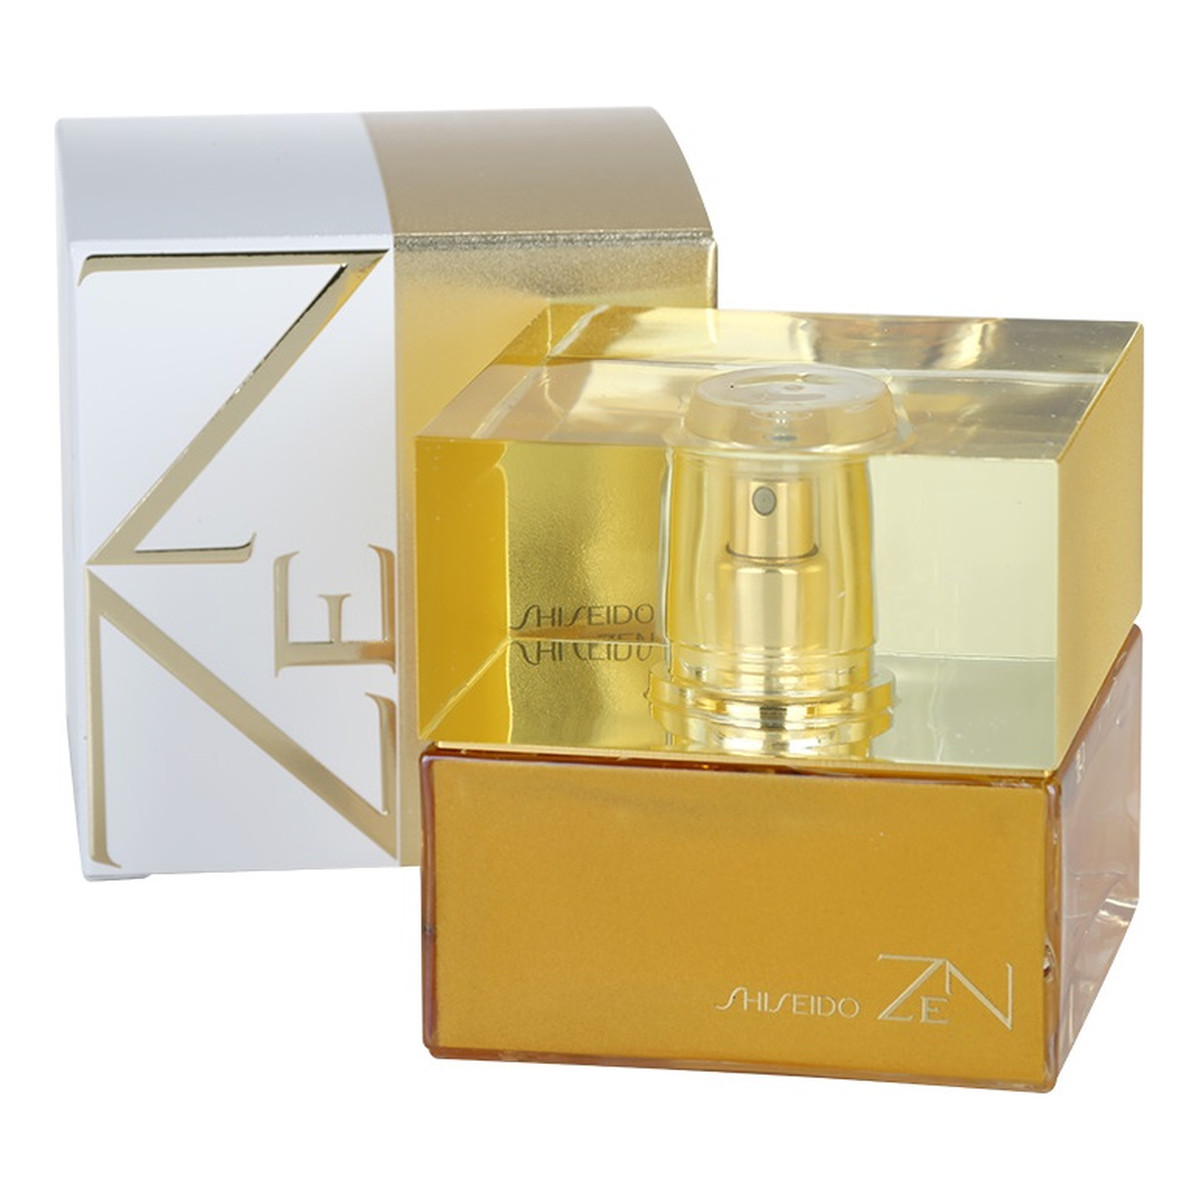 Shiseido Zen woda perfumowana dla kobiet 50ml